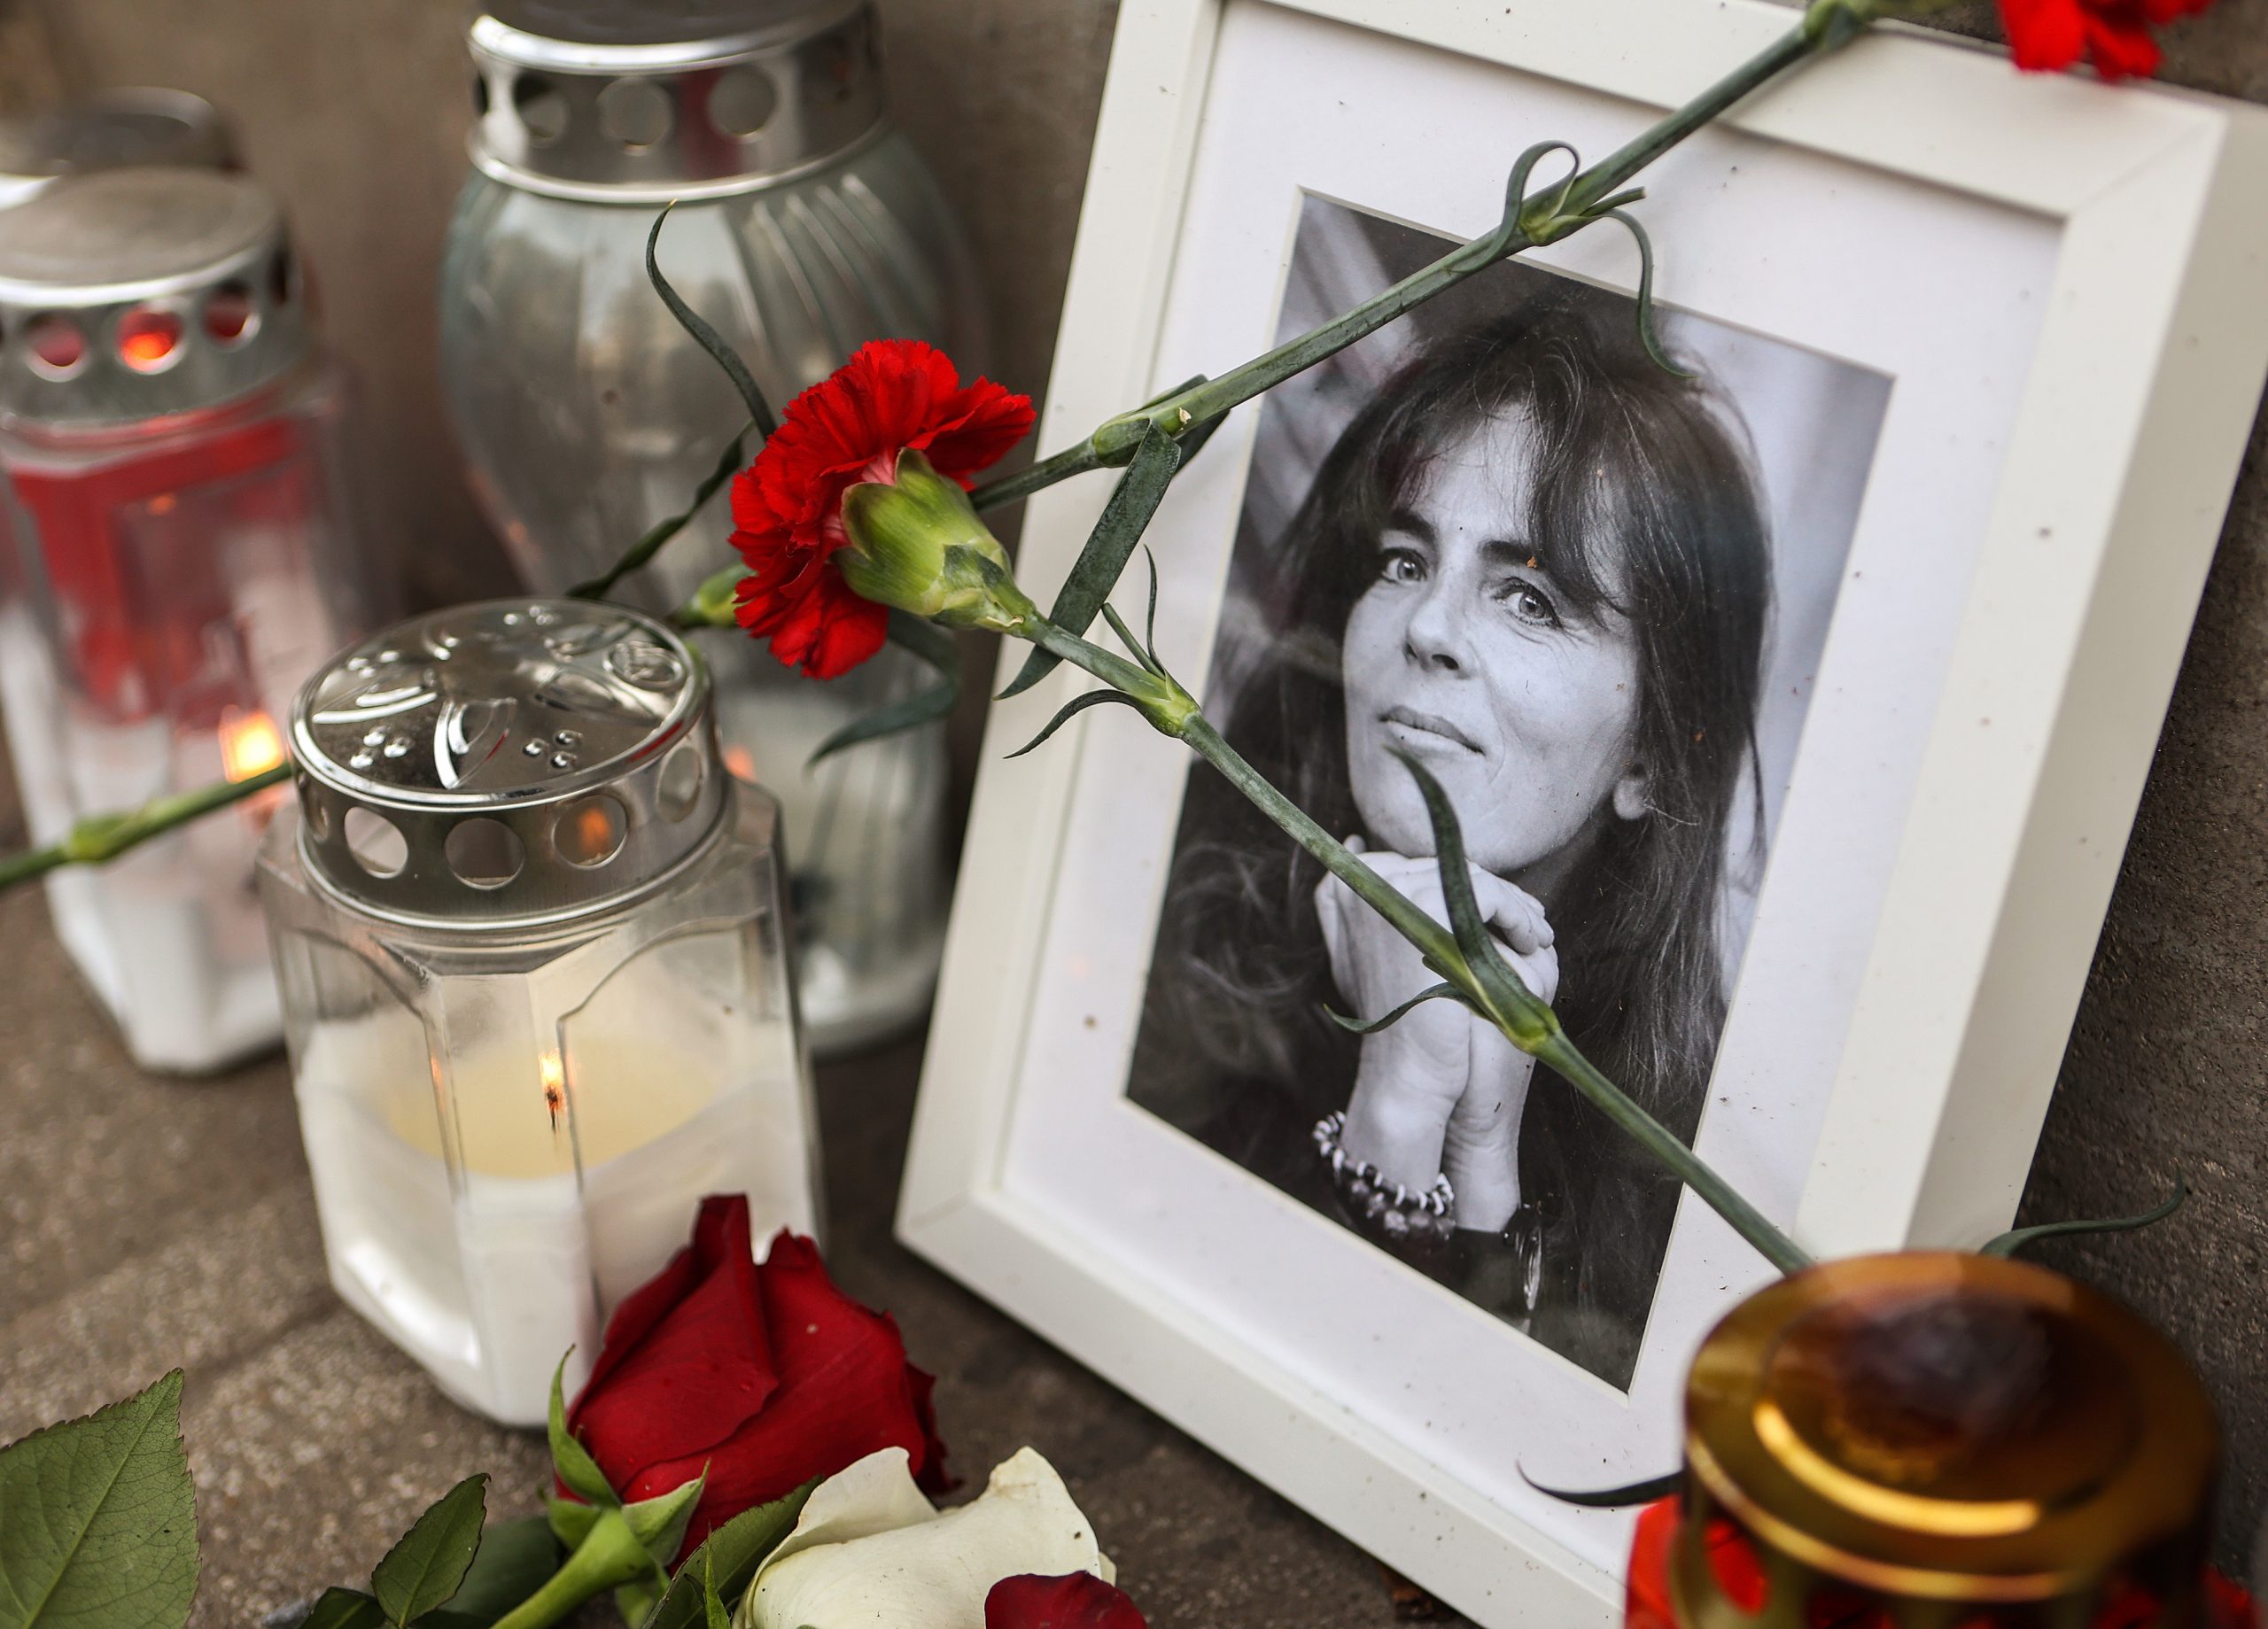 24.01.2021., Zagreb - U Petrovoj ulici u Zagrebu postavljena je fotografija preminule glumice Mire Furlan te polozeno cvijece i zapaljene svijece. Photo: Marko Prpic/PIXSELL